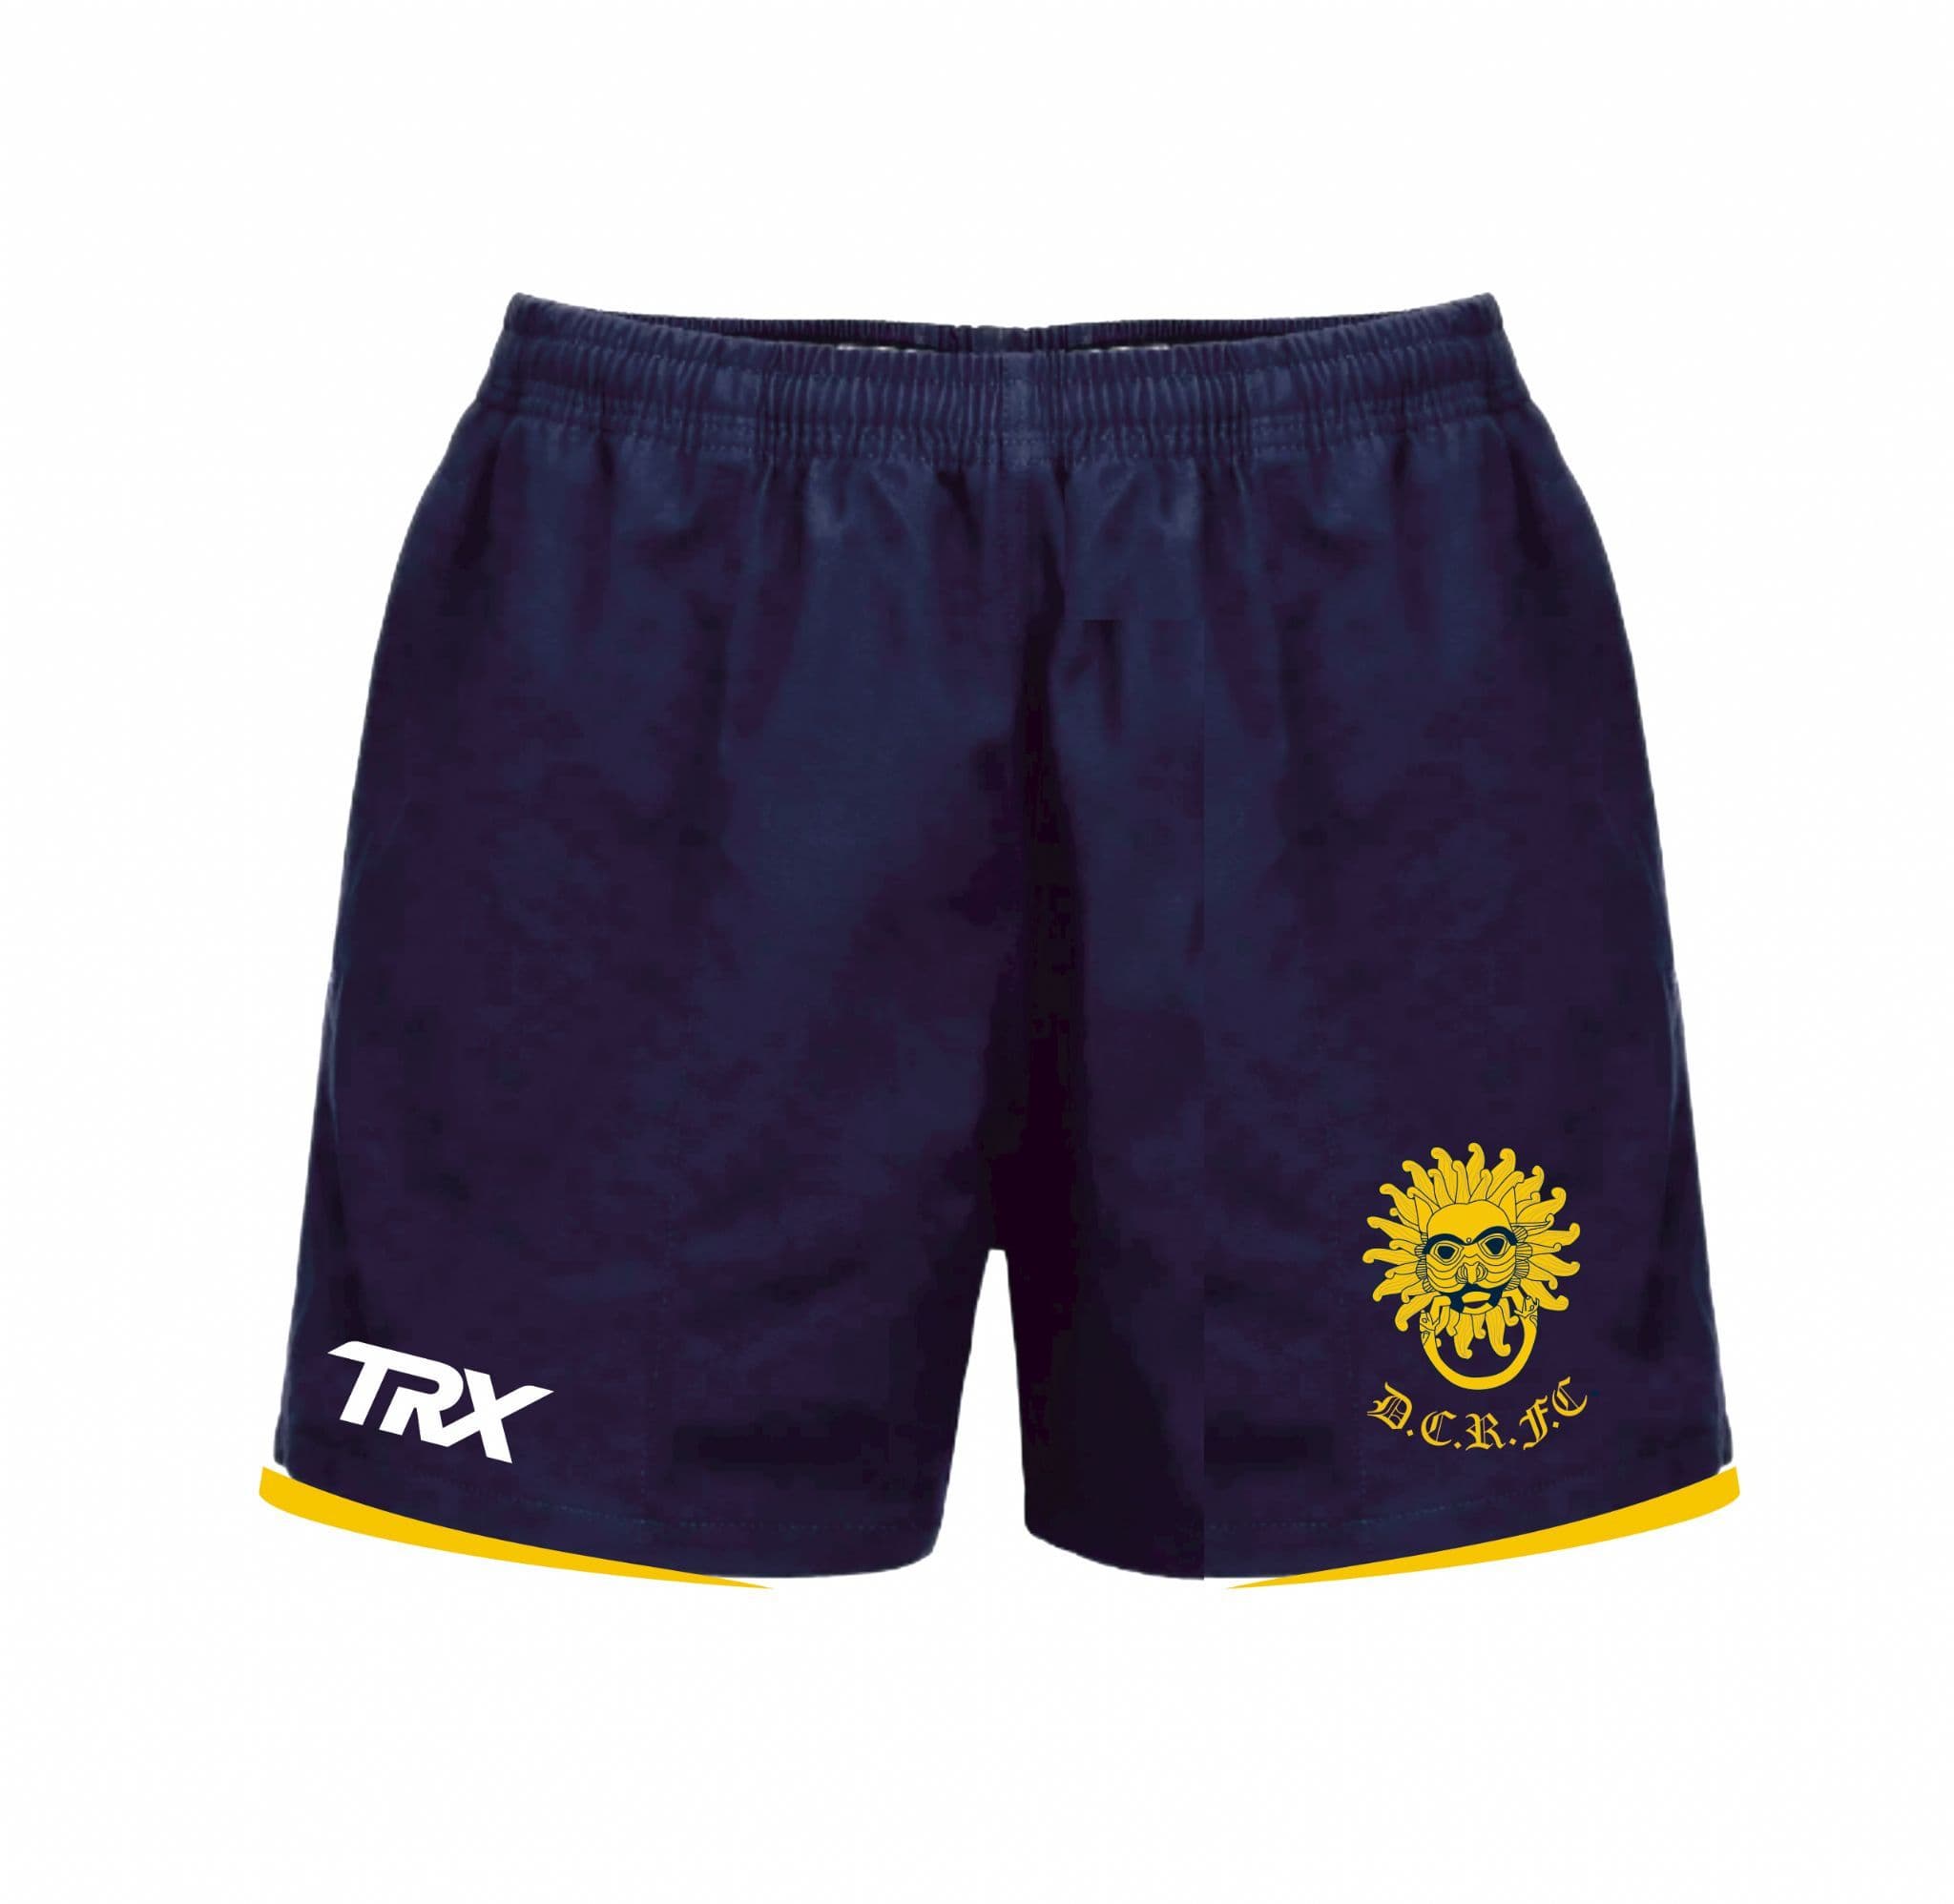 DCRFC TRX Playing Shorts